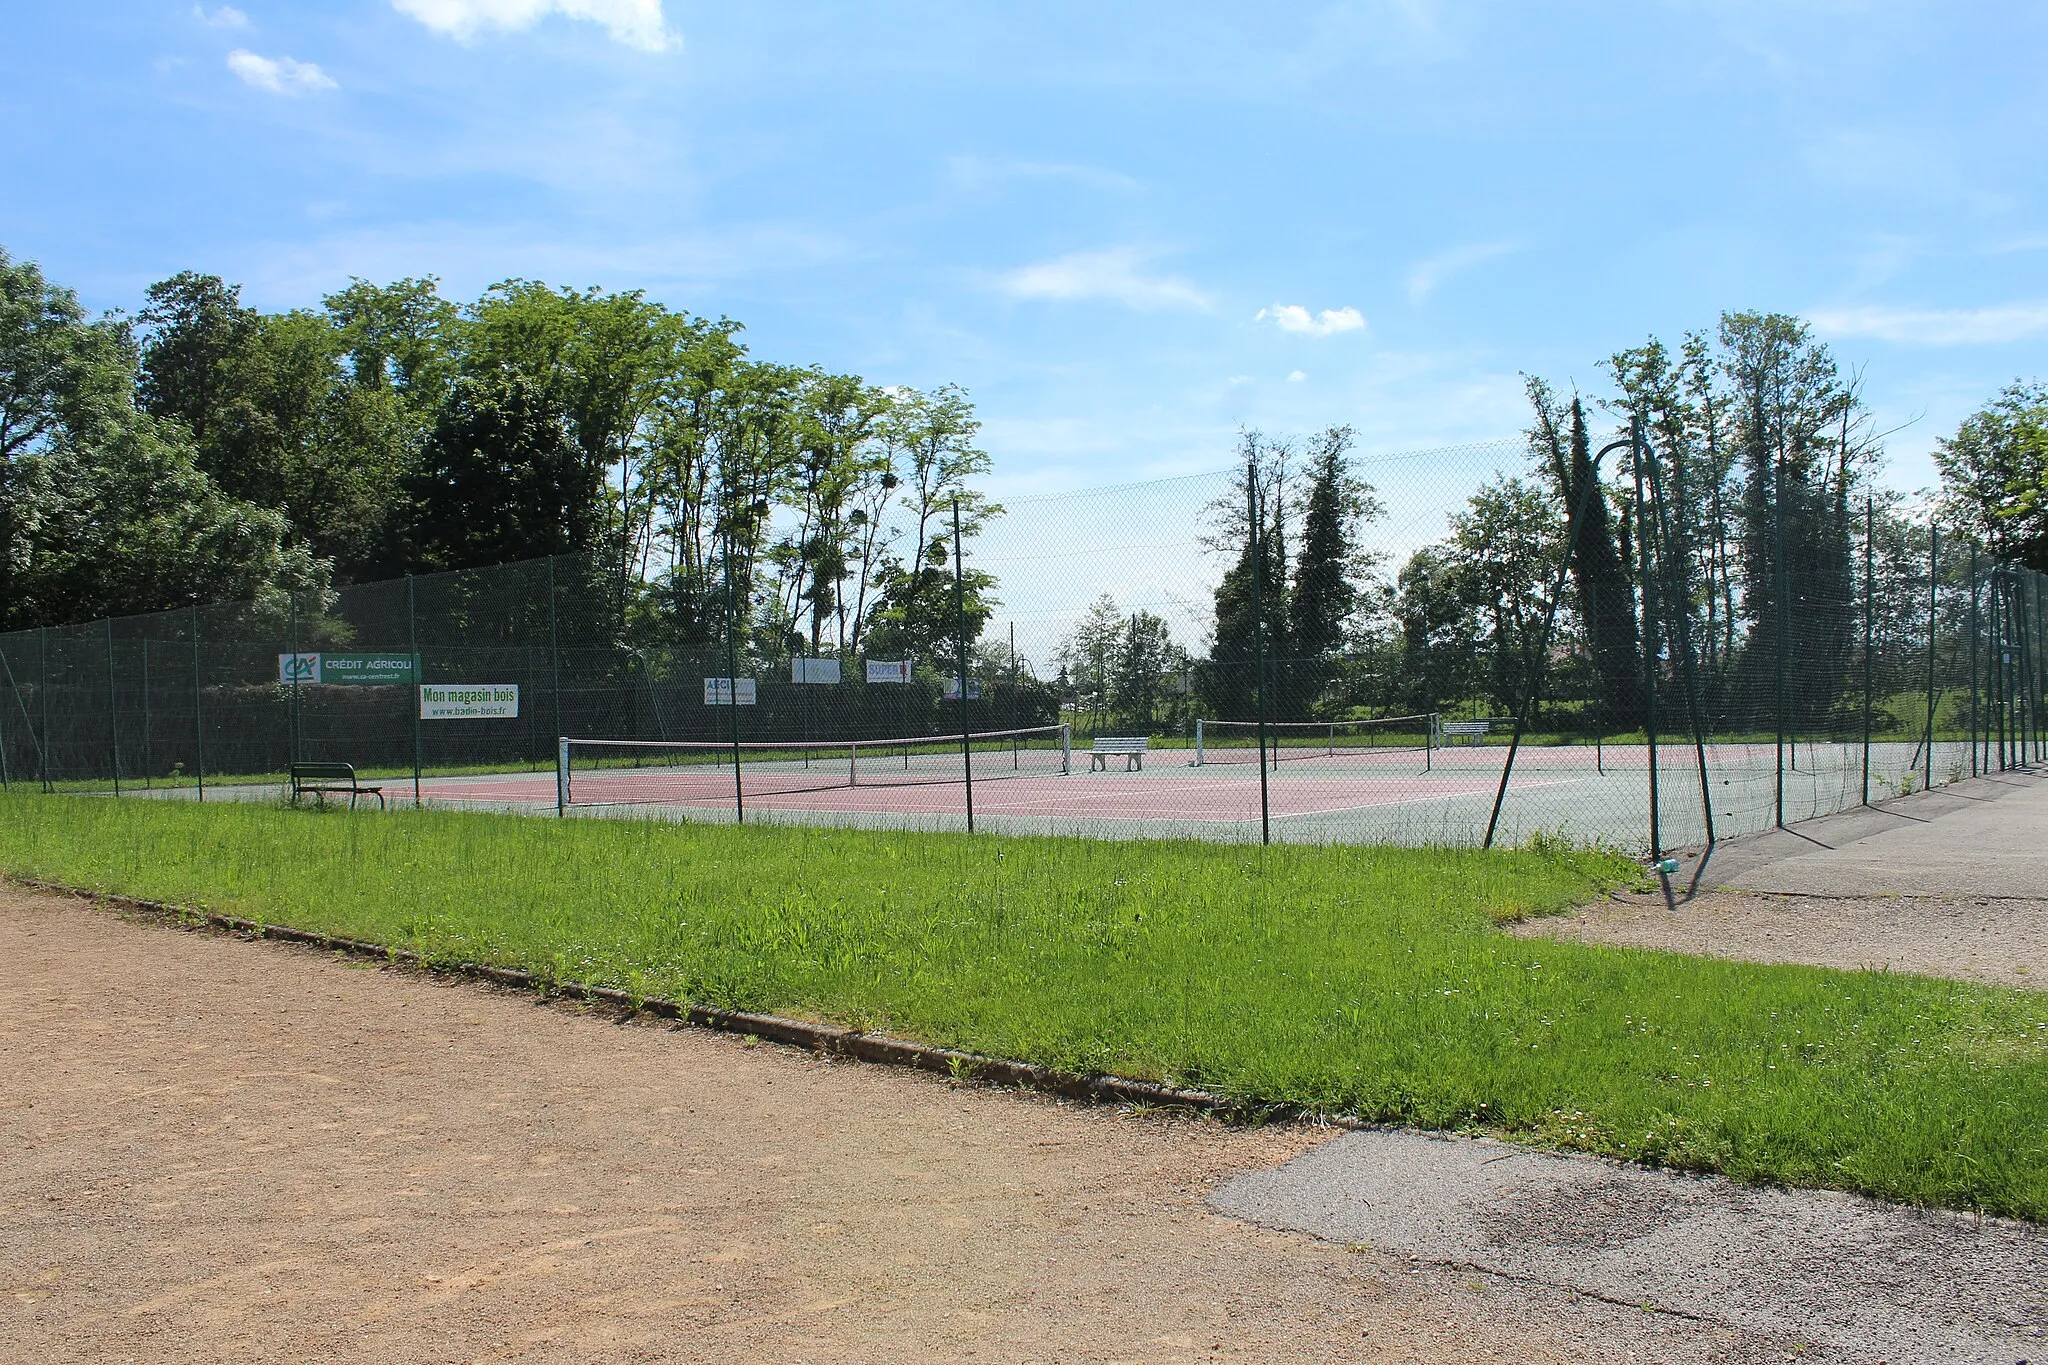 Photo showing: Courts extérieurs de tennis à Crottet.